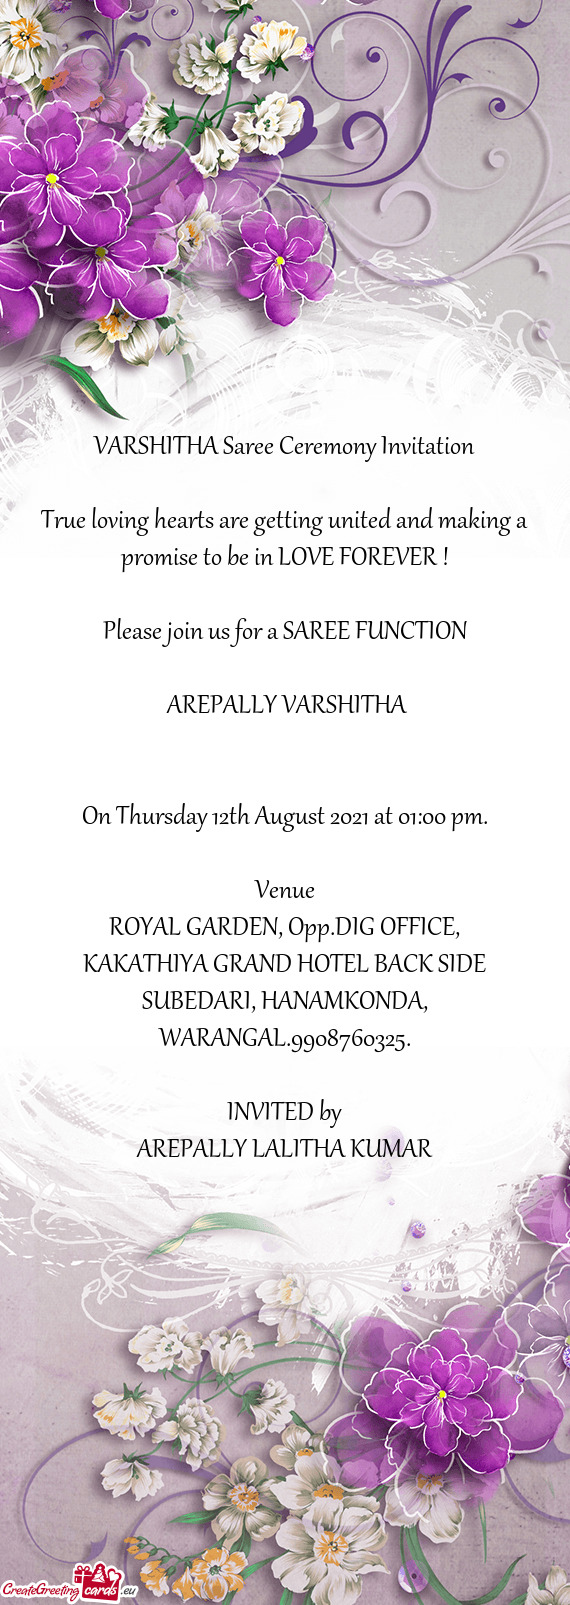 VARSHITHA Saree Ceremony Invitation